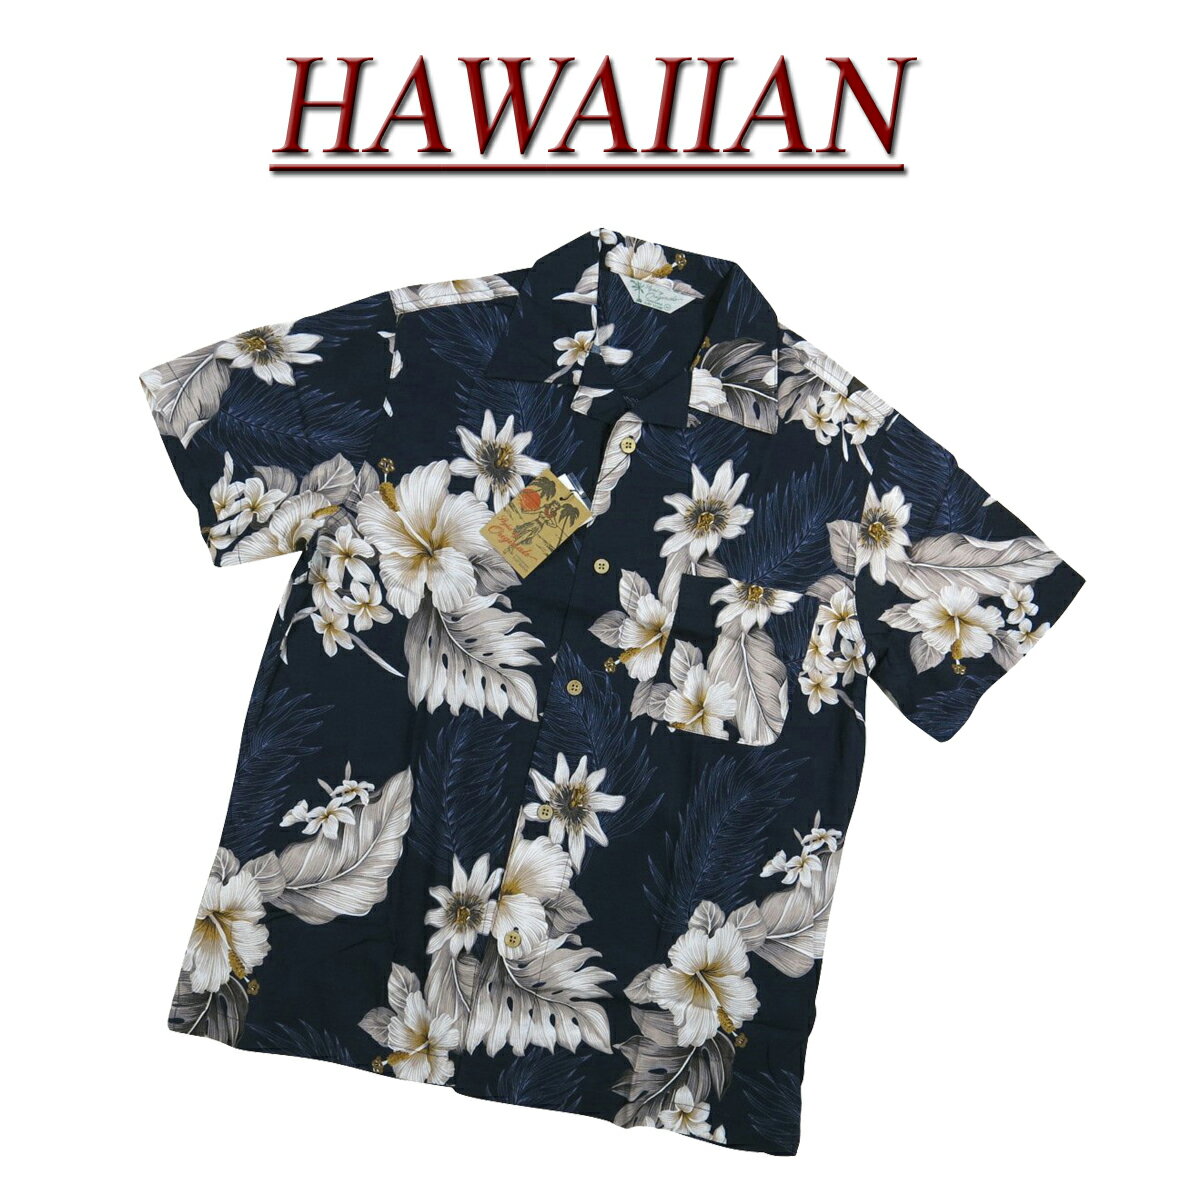  wu483 新品 ハイビスカス 花柄 半袖 レーヨン100% アロハシャツ メンズ アロハ ハワイアンシャツ  (ビッグサイズあります!)